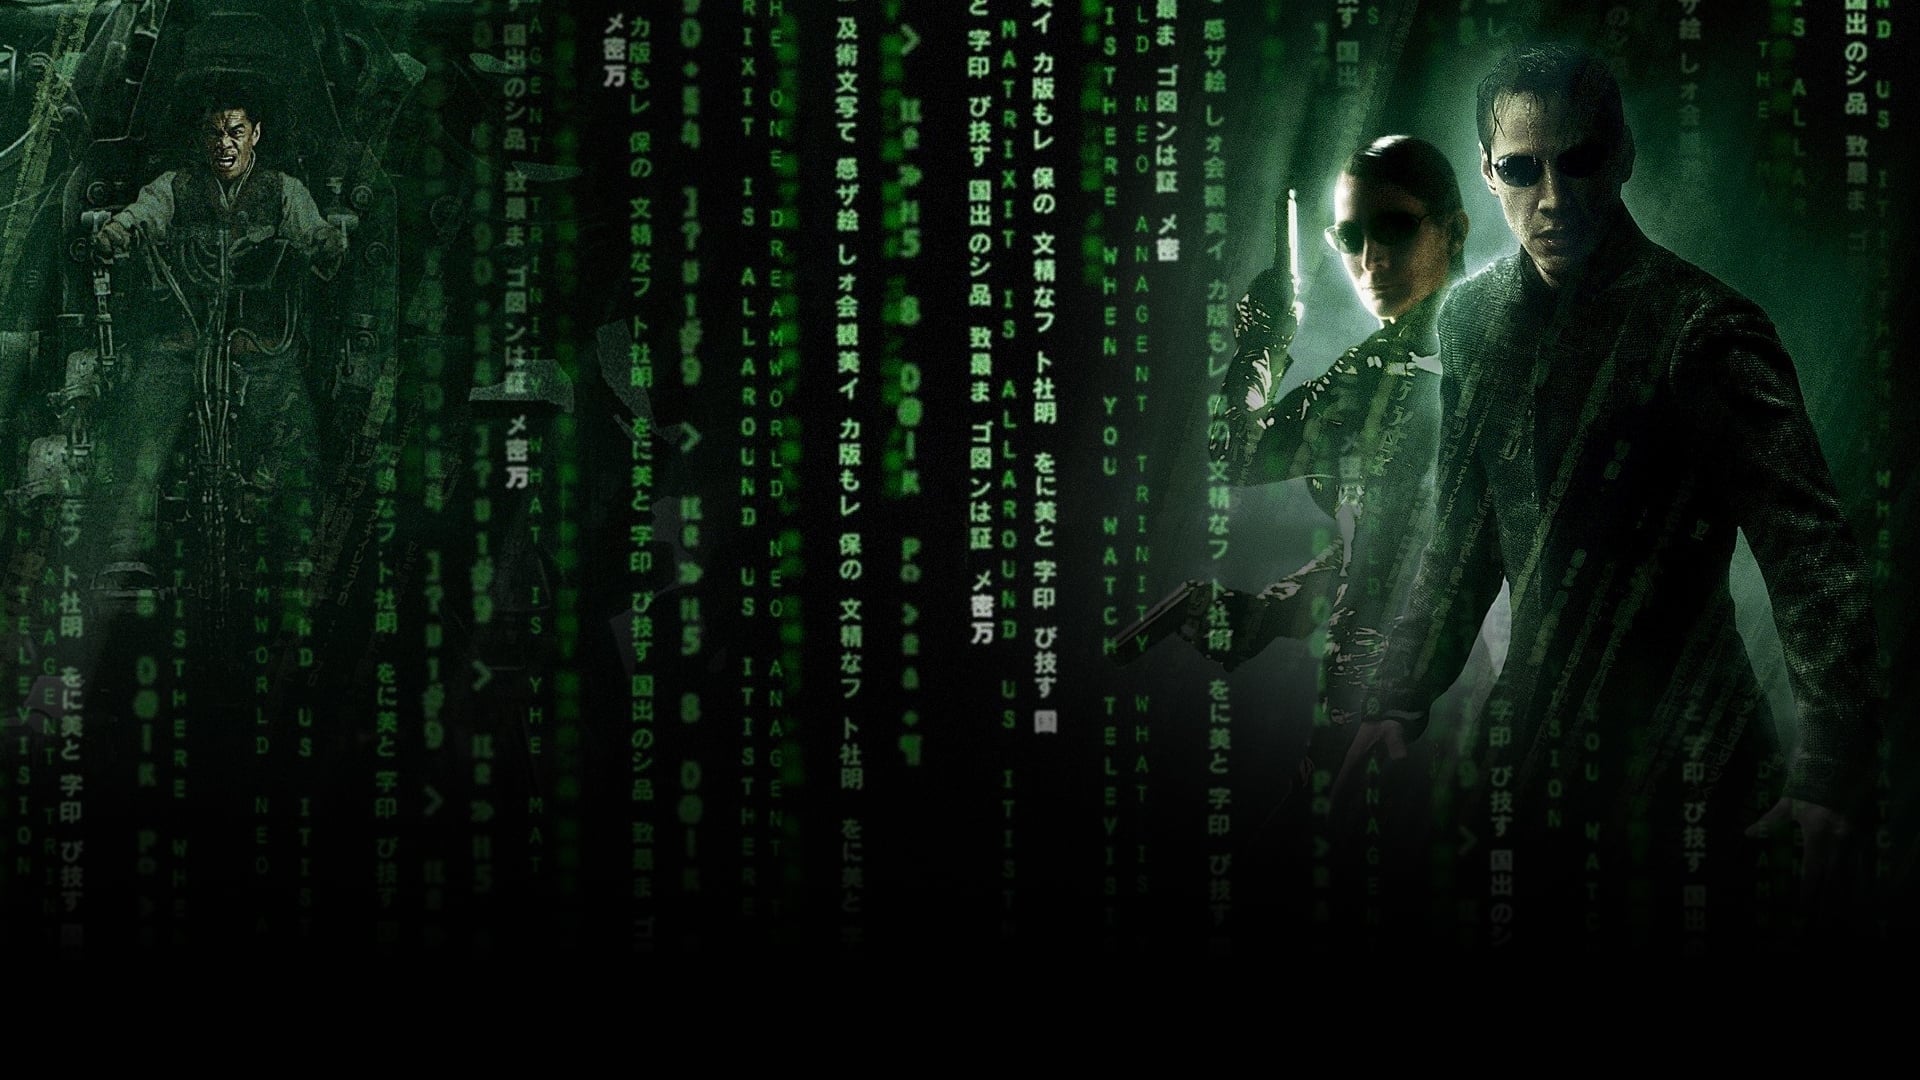 Imagens do Matrix Revolutions Dublado Dublado Online